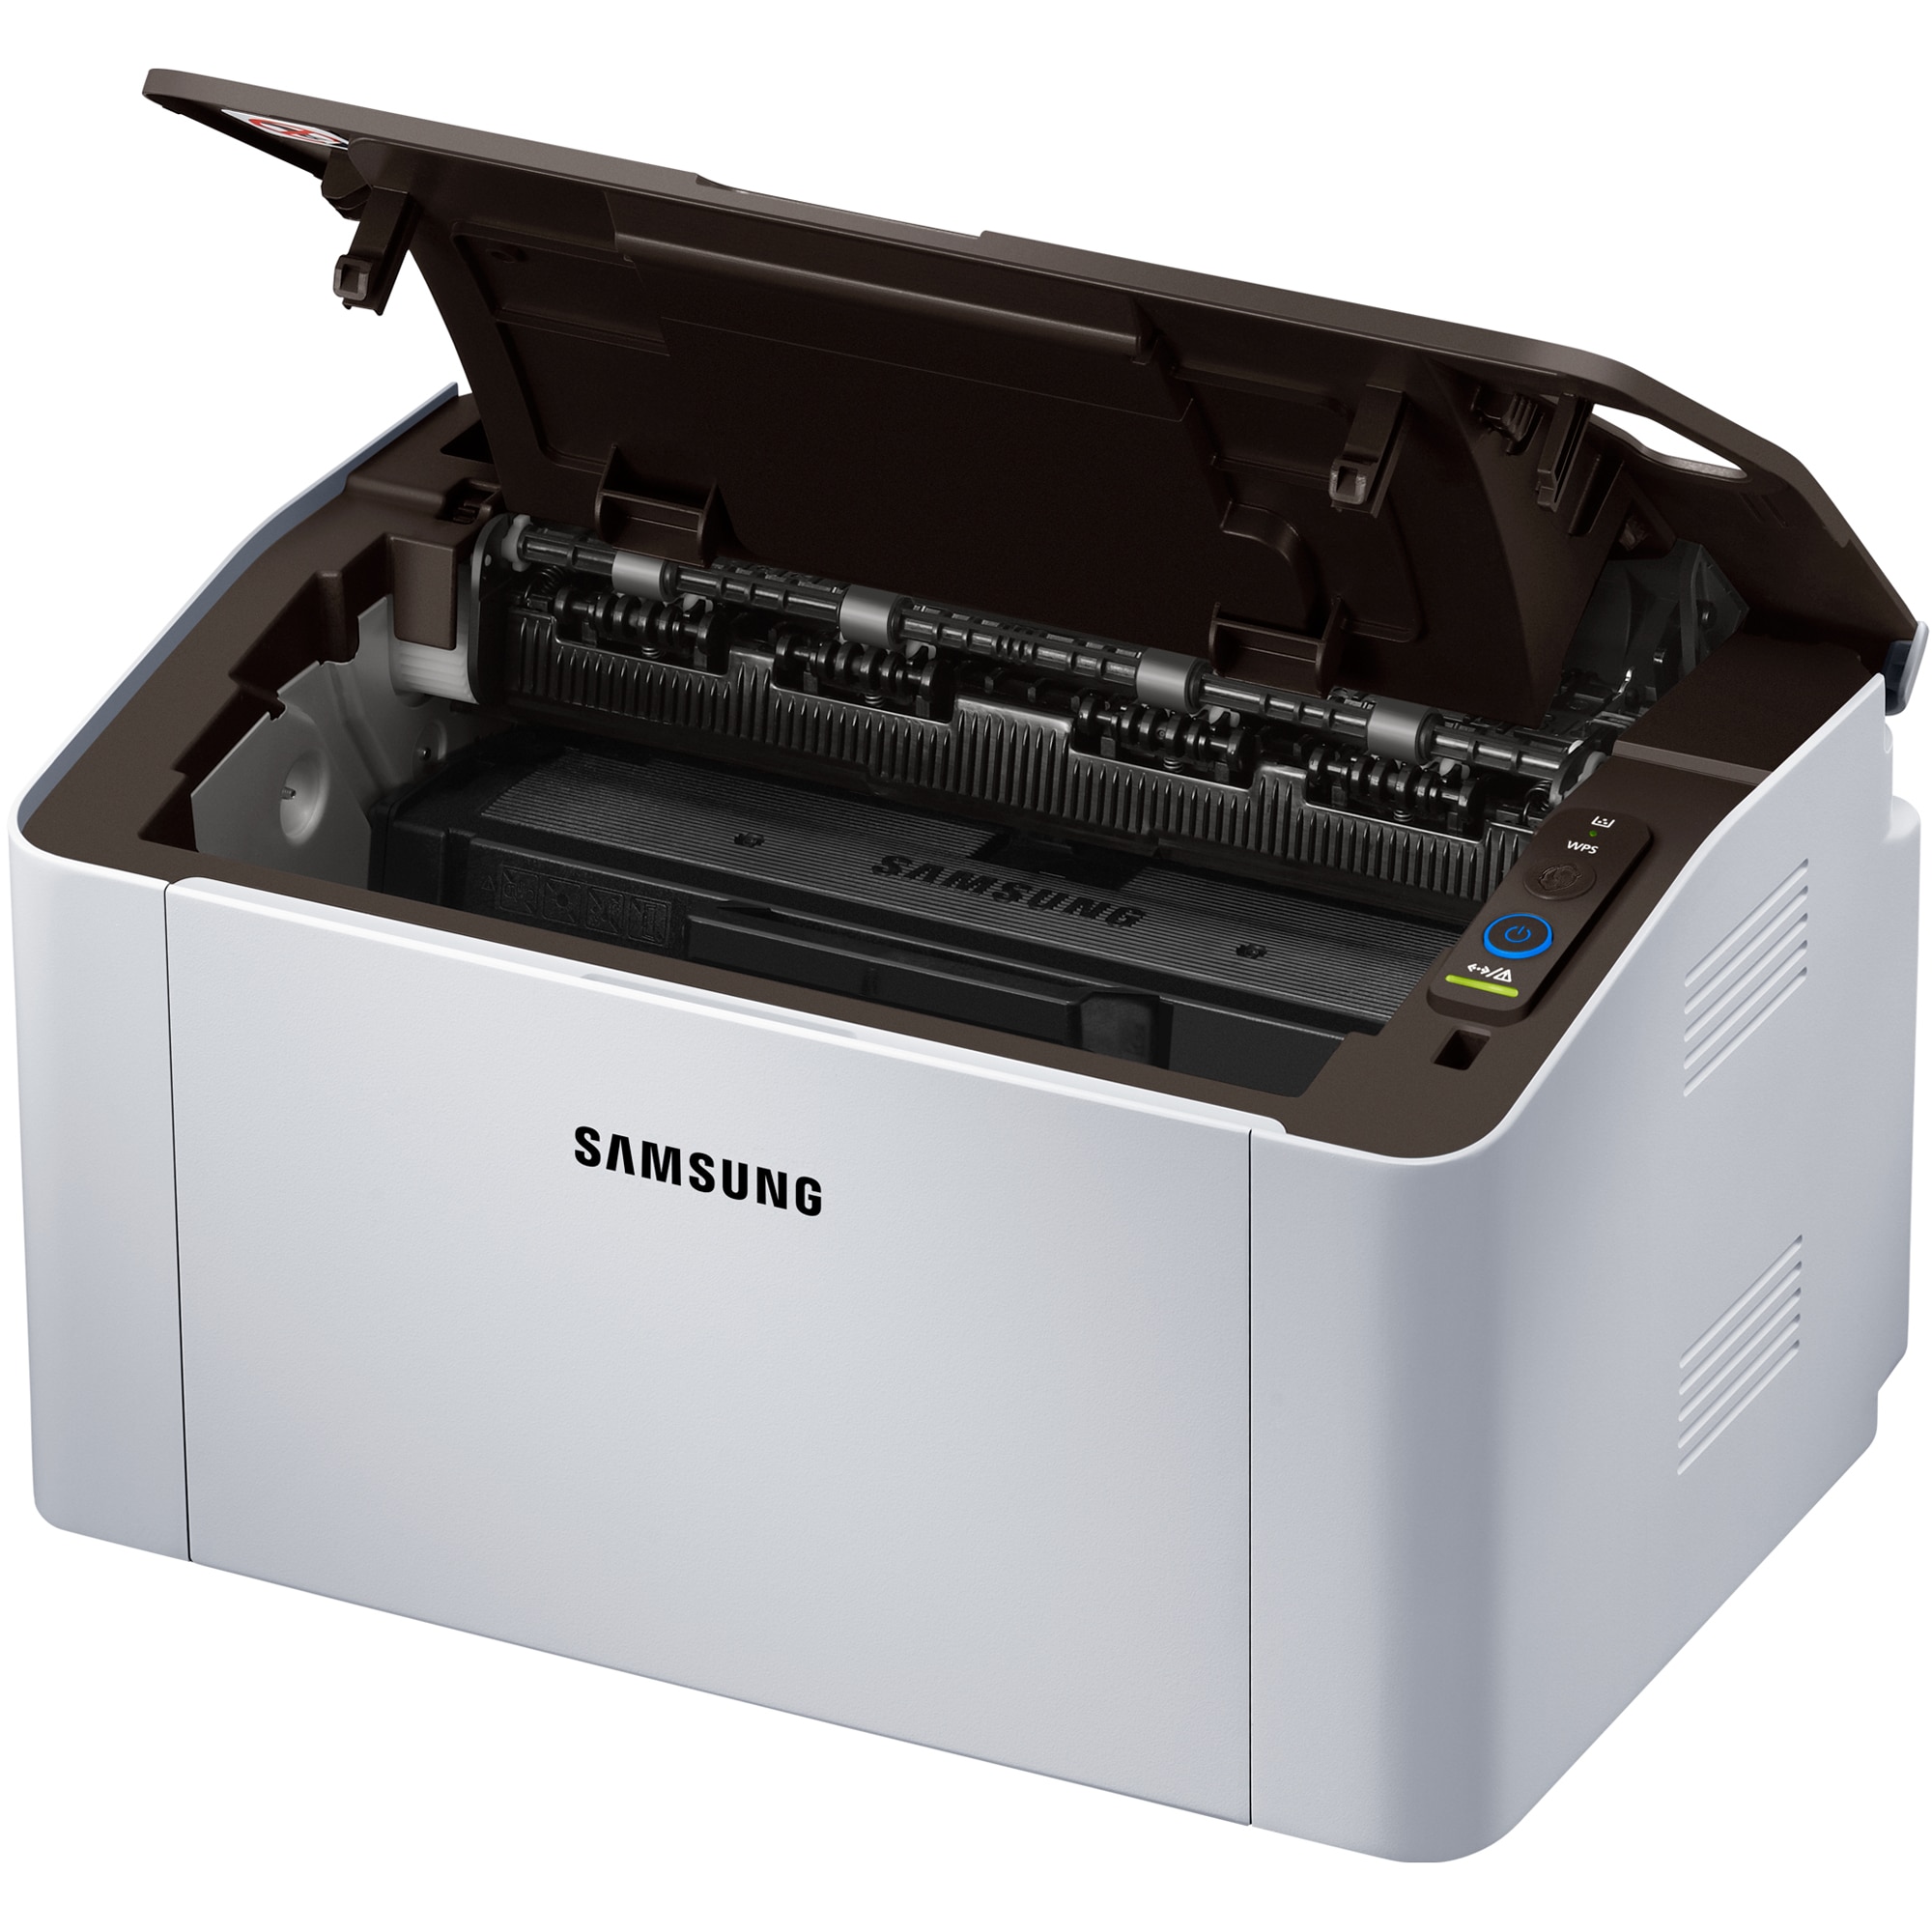 Лазерные принтеры samsung купить. Samsung Xpress m2020. Samsung Xpress SL-m2020. Принтер Samsung SL-m2020. Принтер Samsung Xpress m2020.